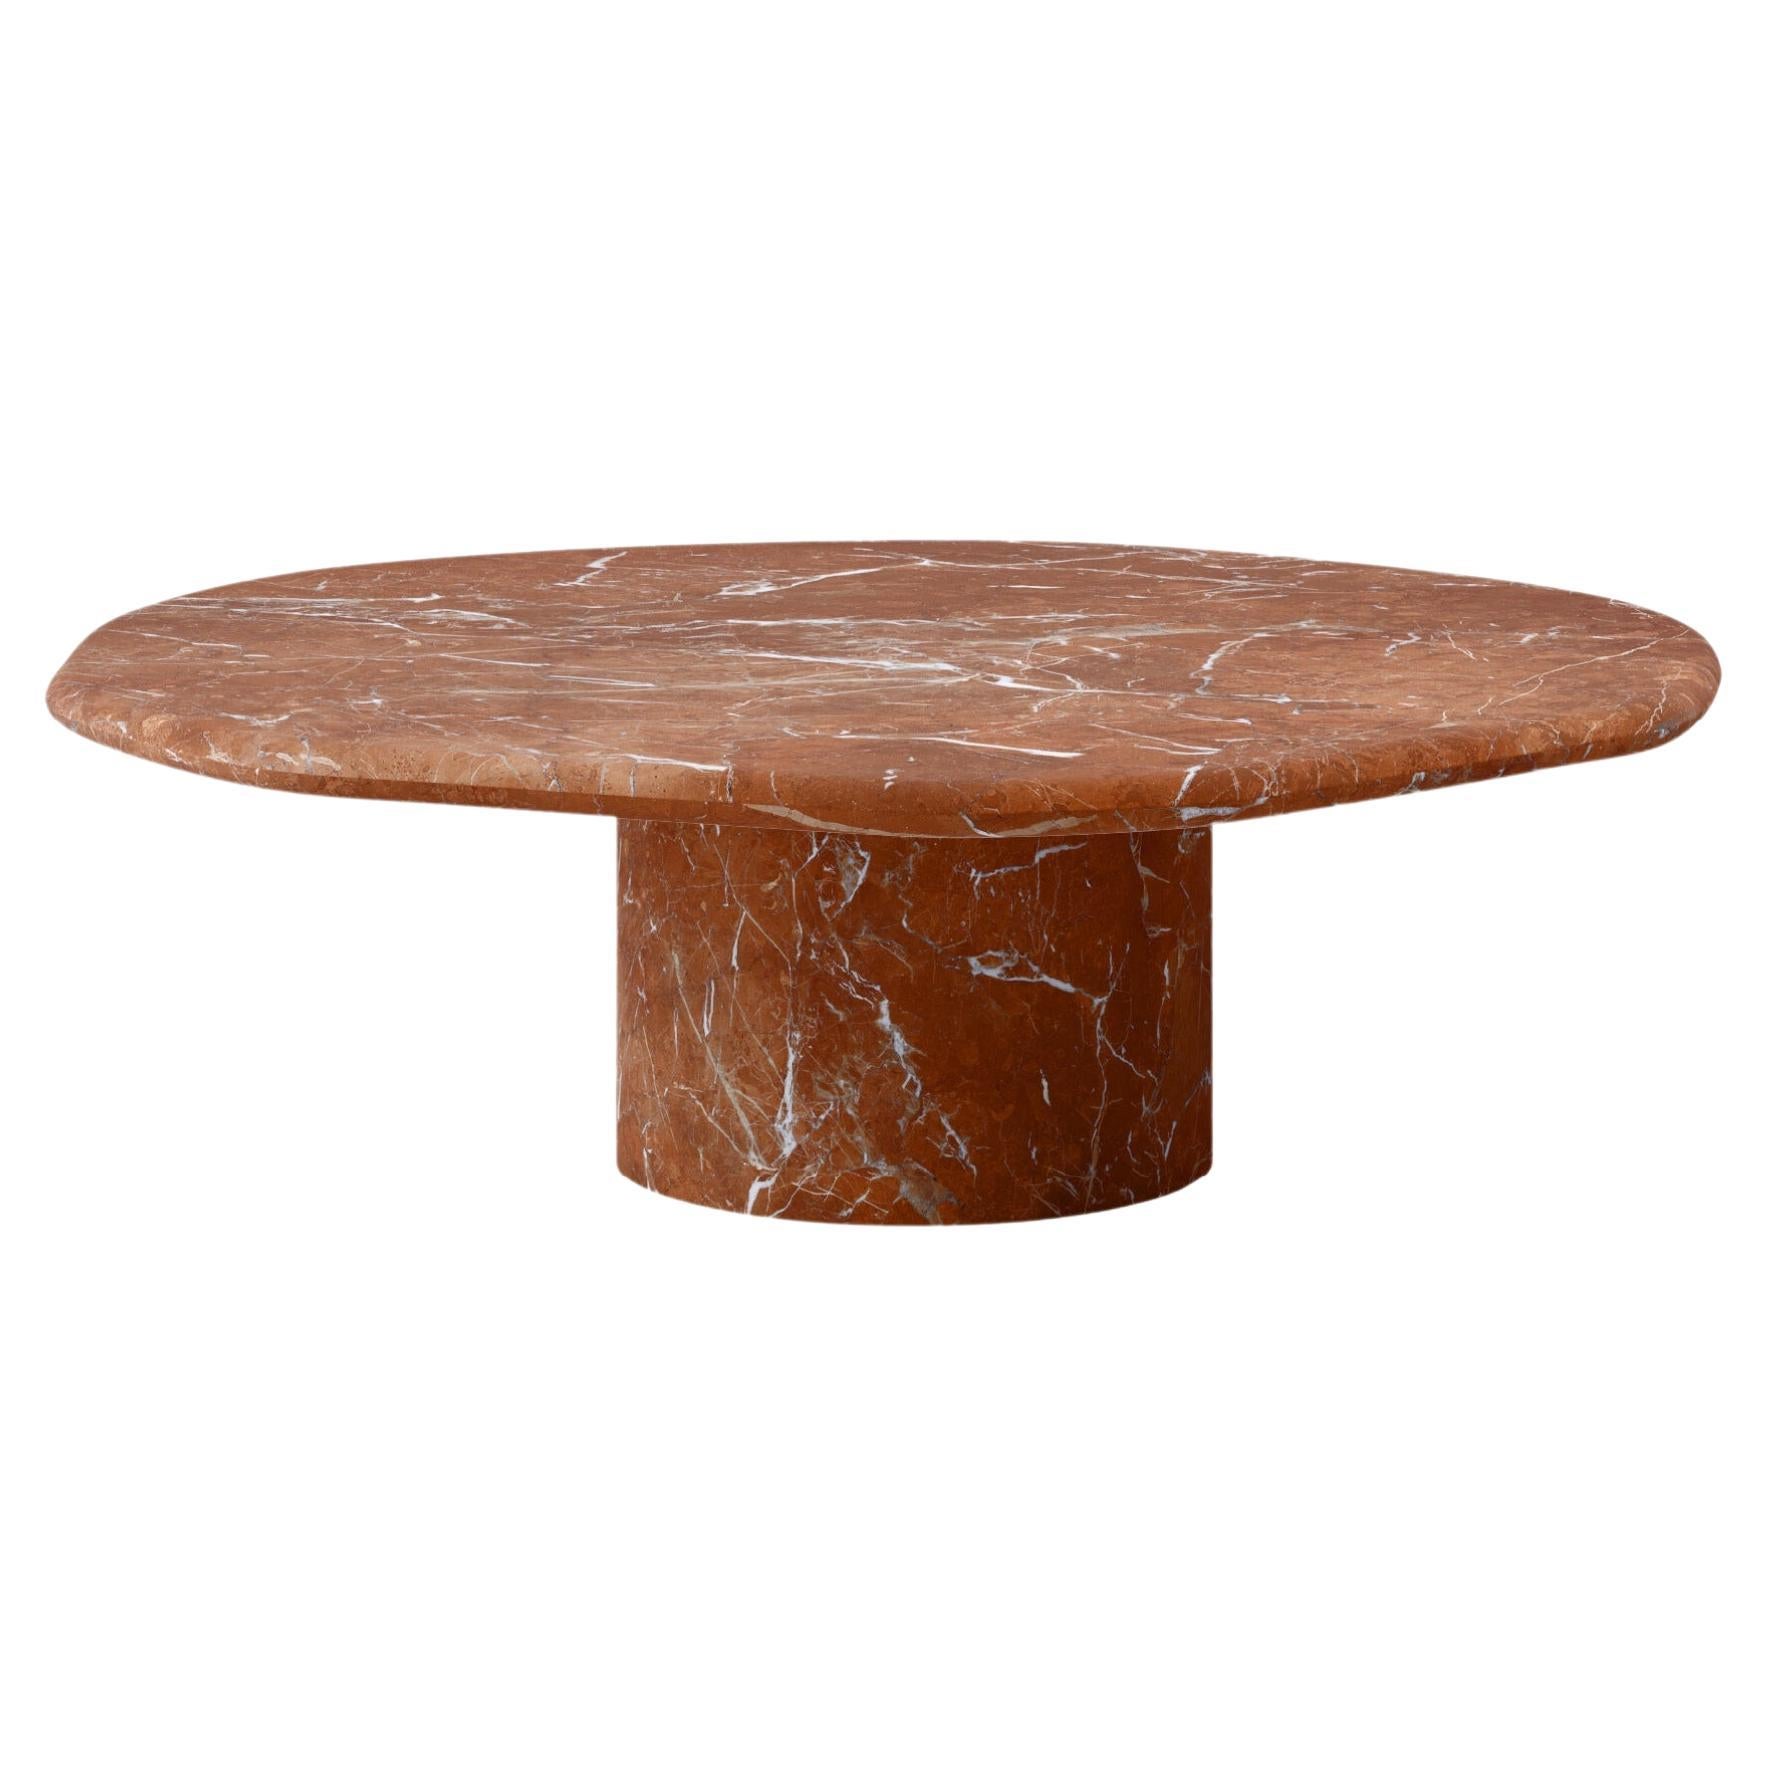 FORM(LA) Lago Round Coffee Table 60”L x 60”W x 14”H Rojo Alicante Marble